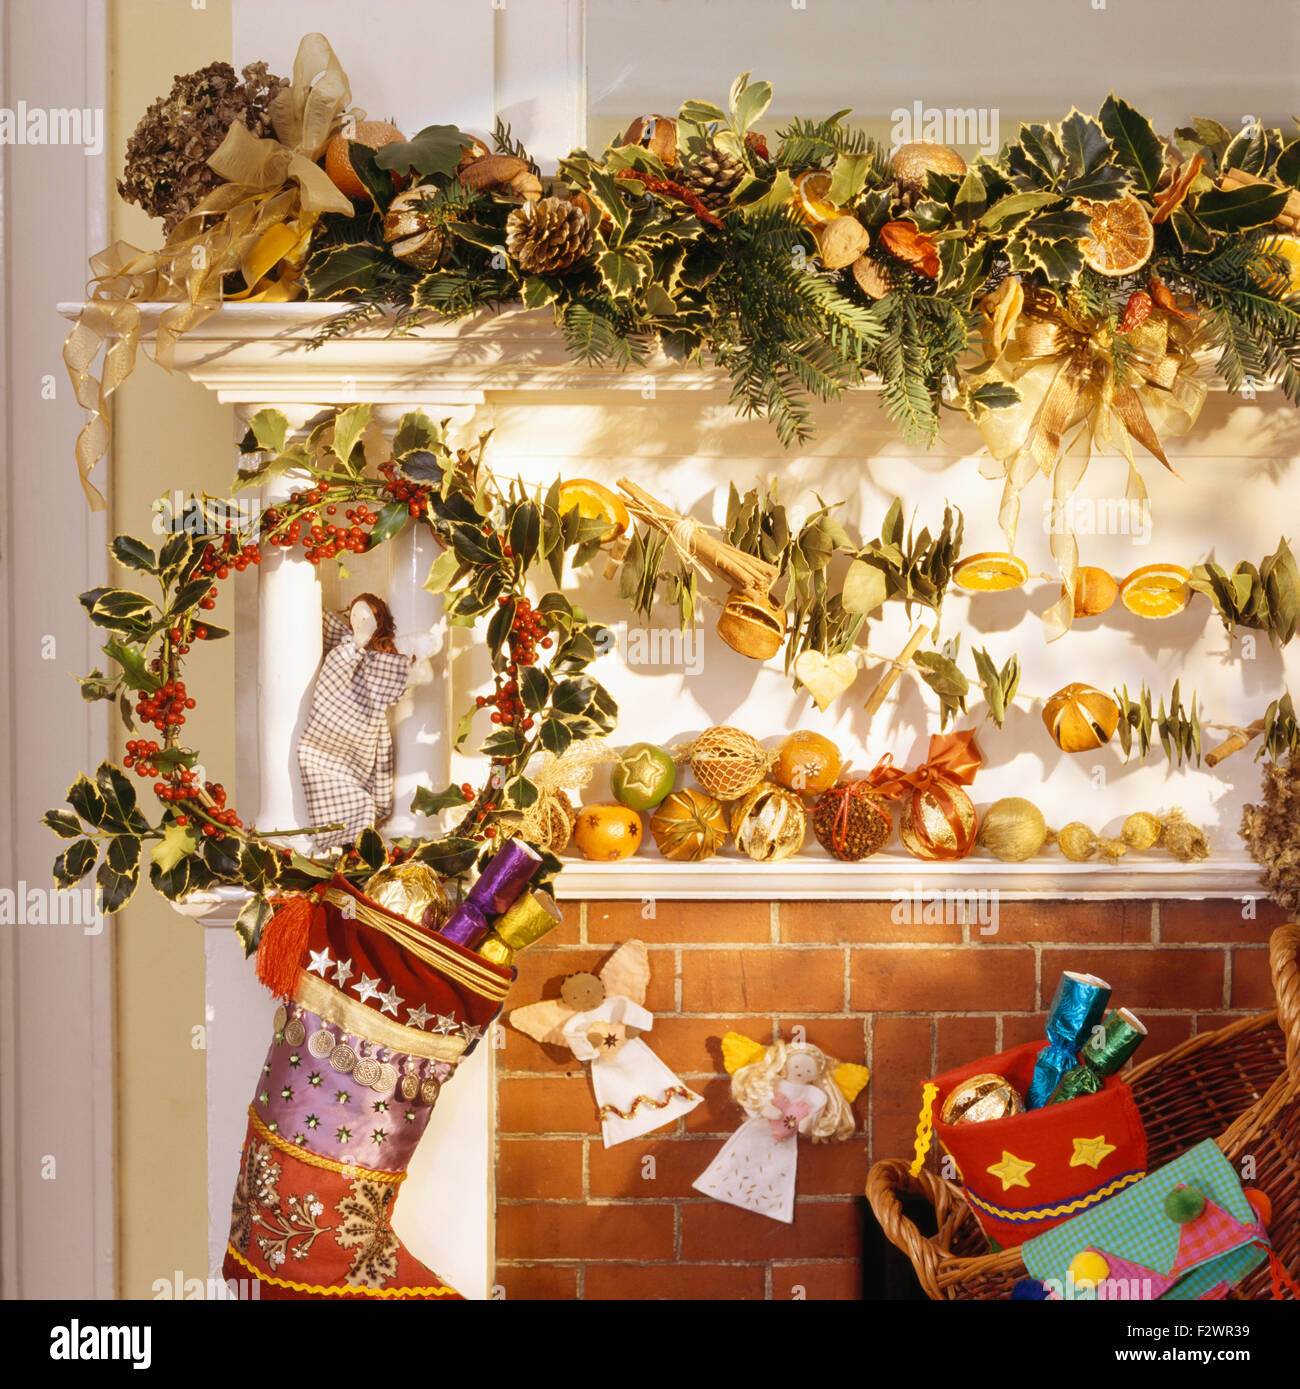 Fruits fait maison garland et couronne de houx sur la cheminée avec un bas de Noël de soie colorés Banque D'Images